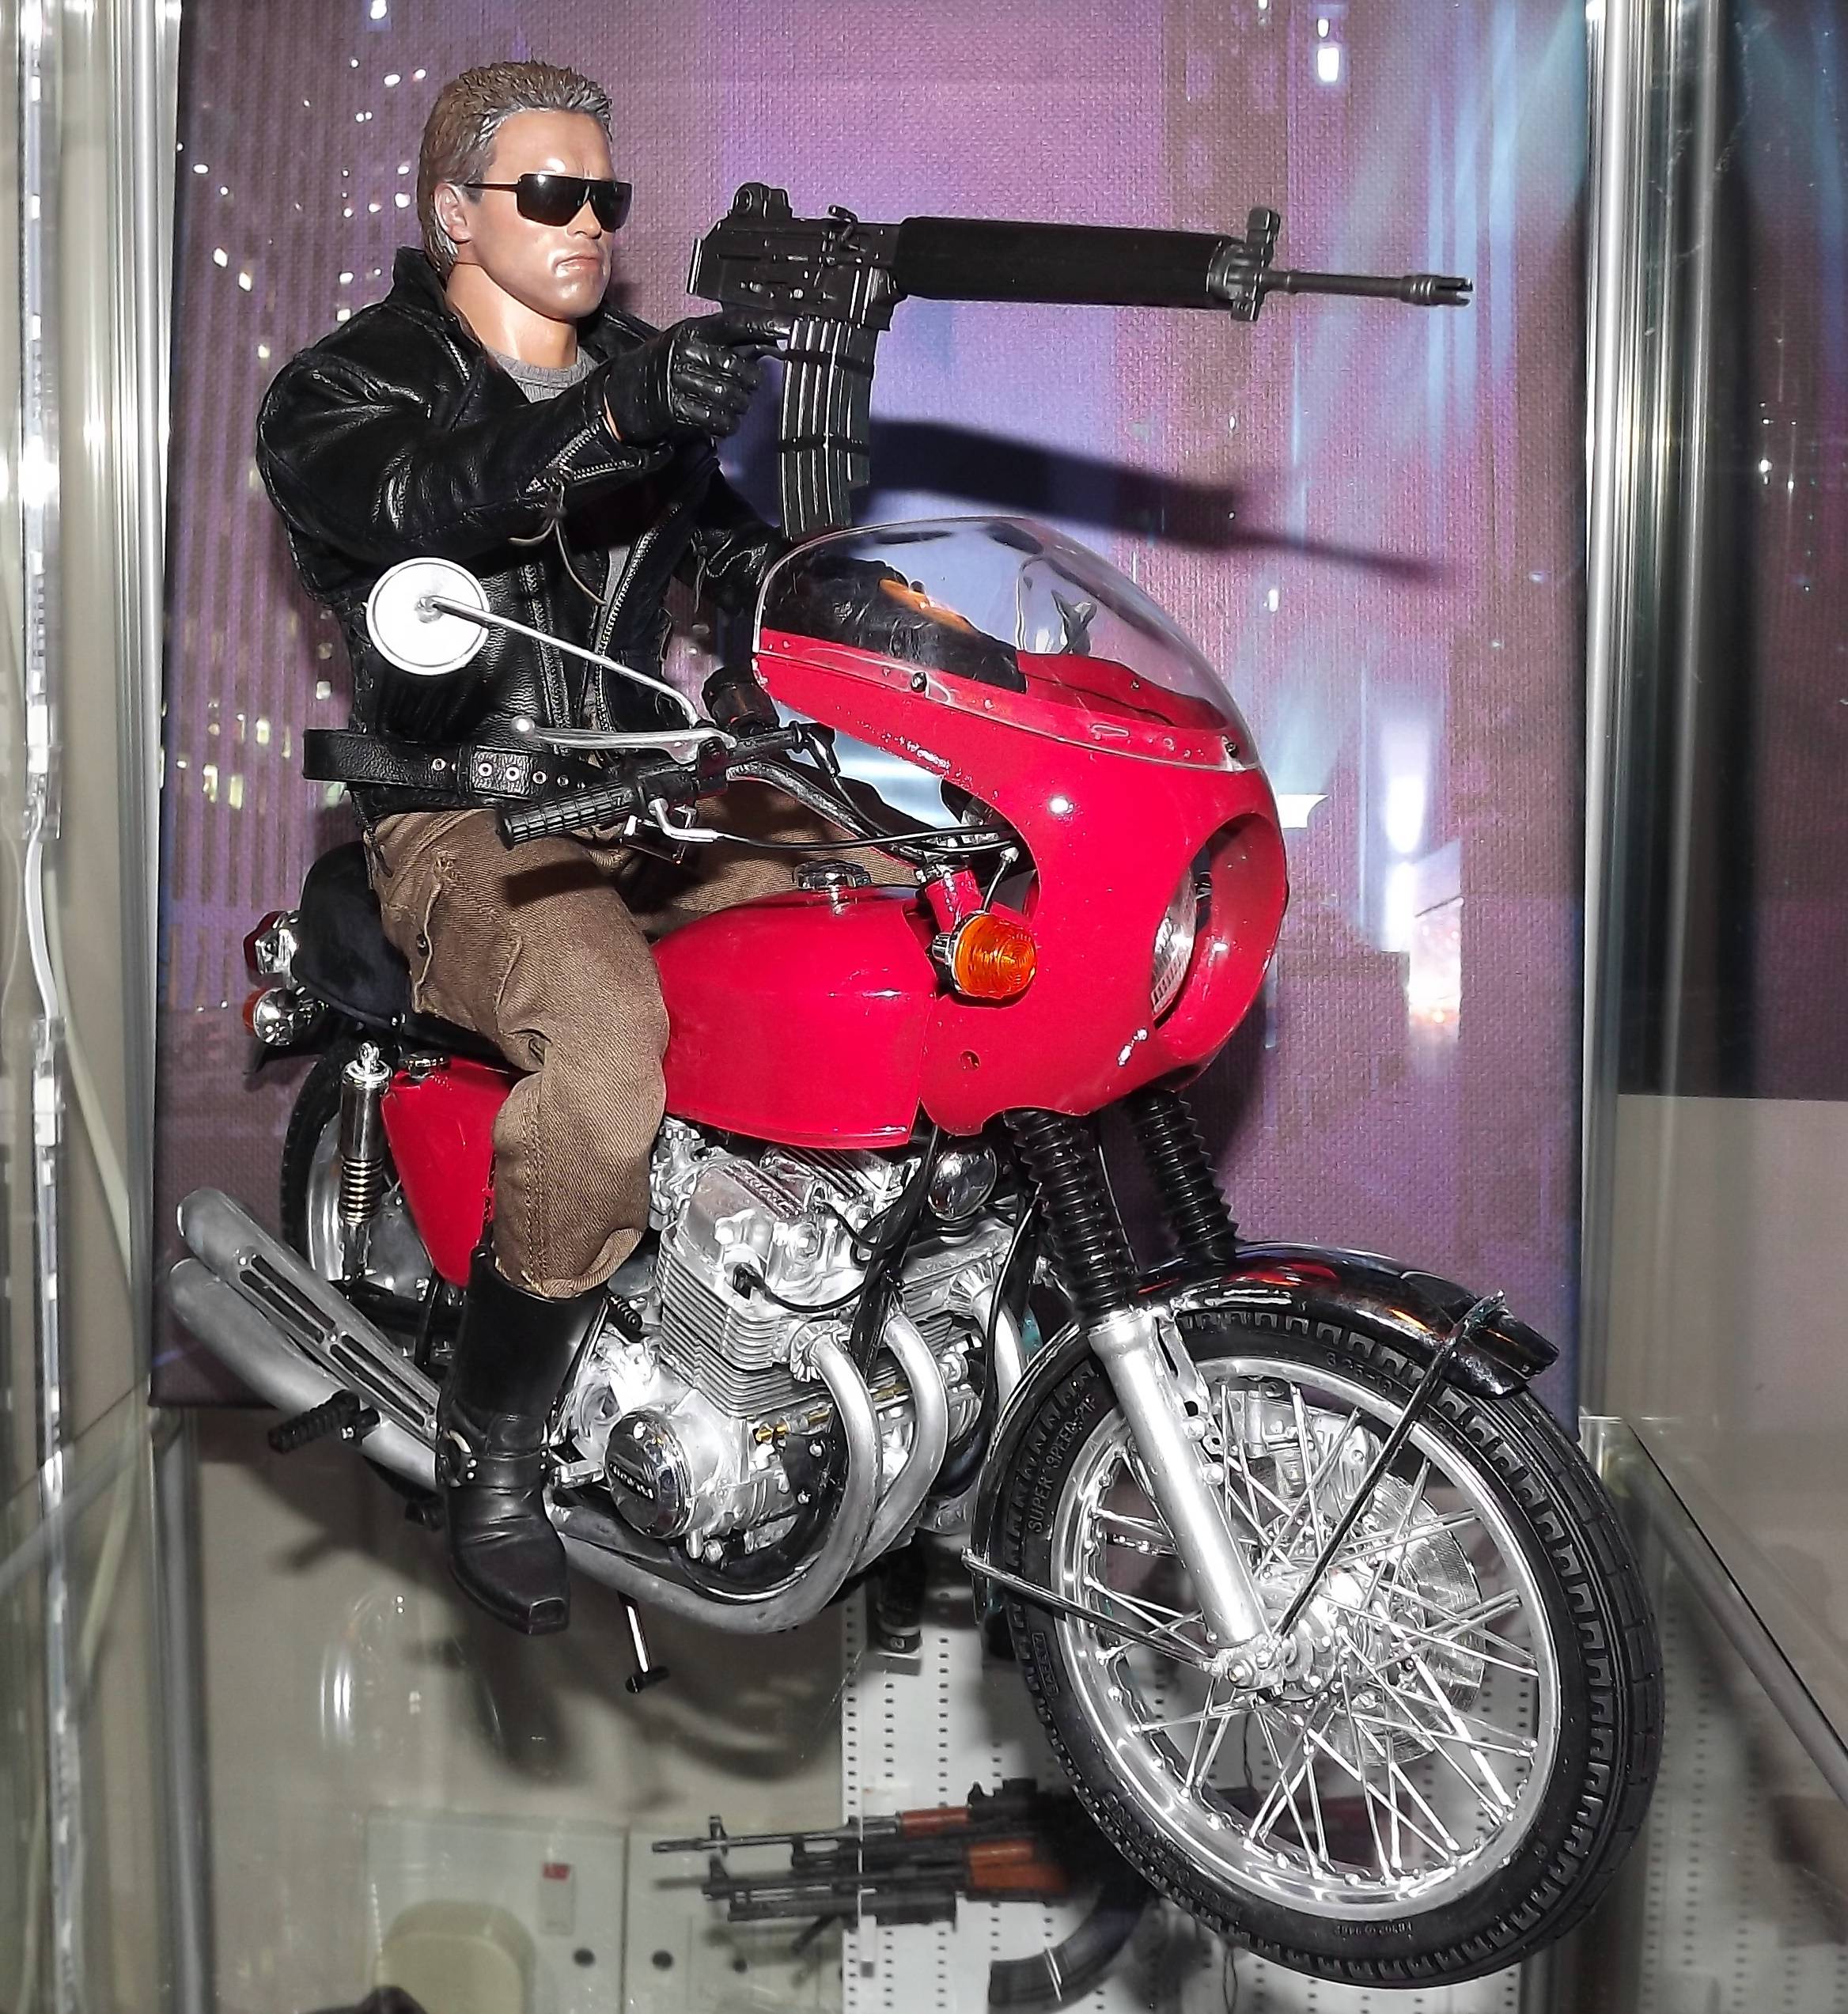 Honda CB750 cztery modele zabawek z pierwszego filmu Terminator